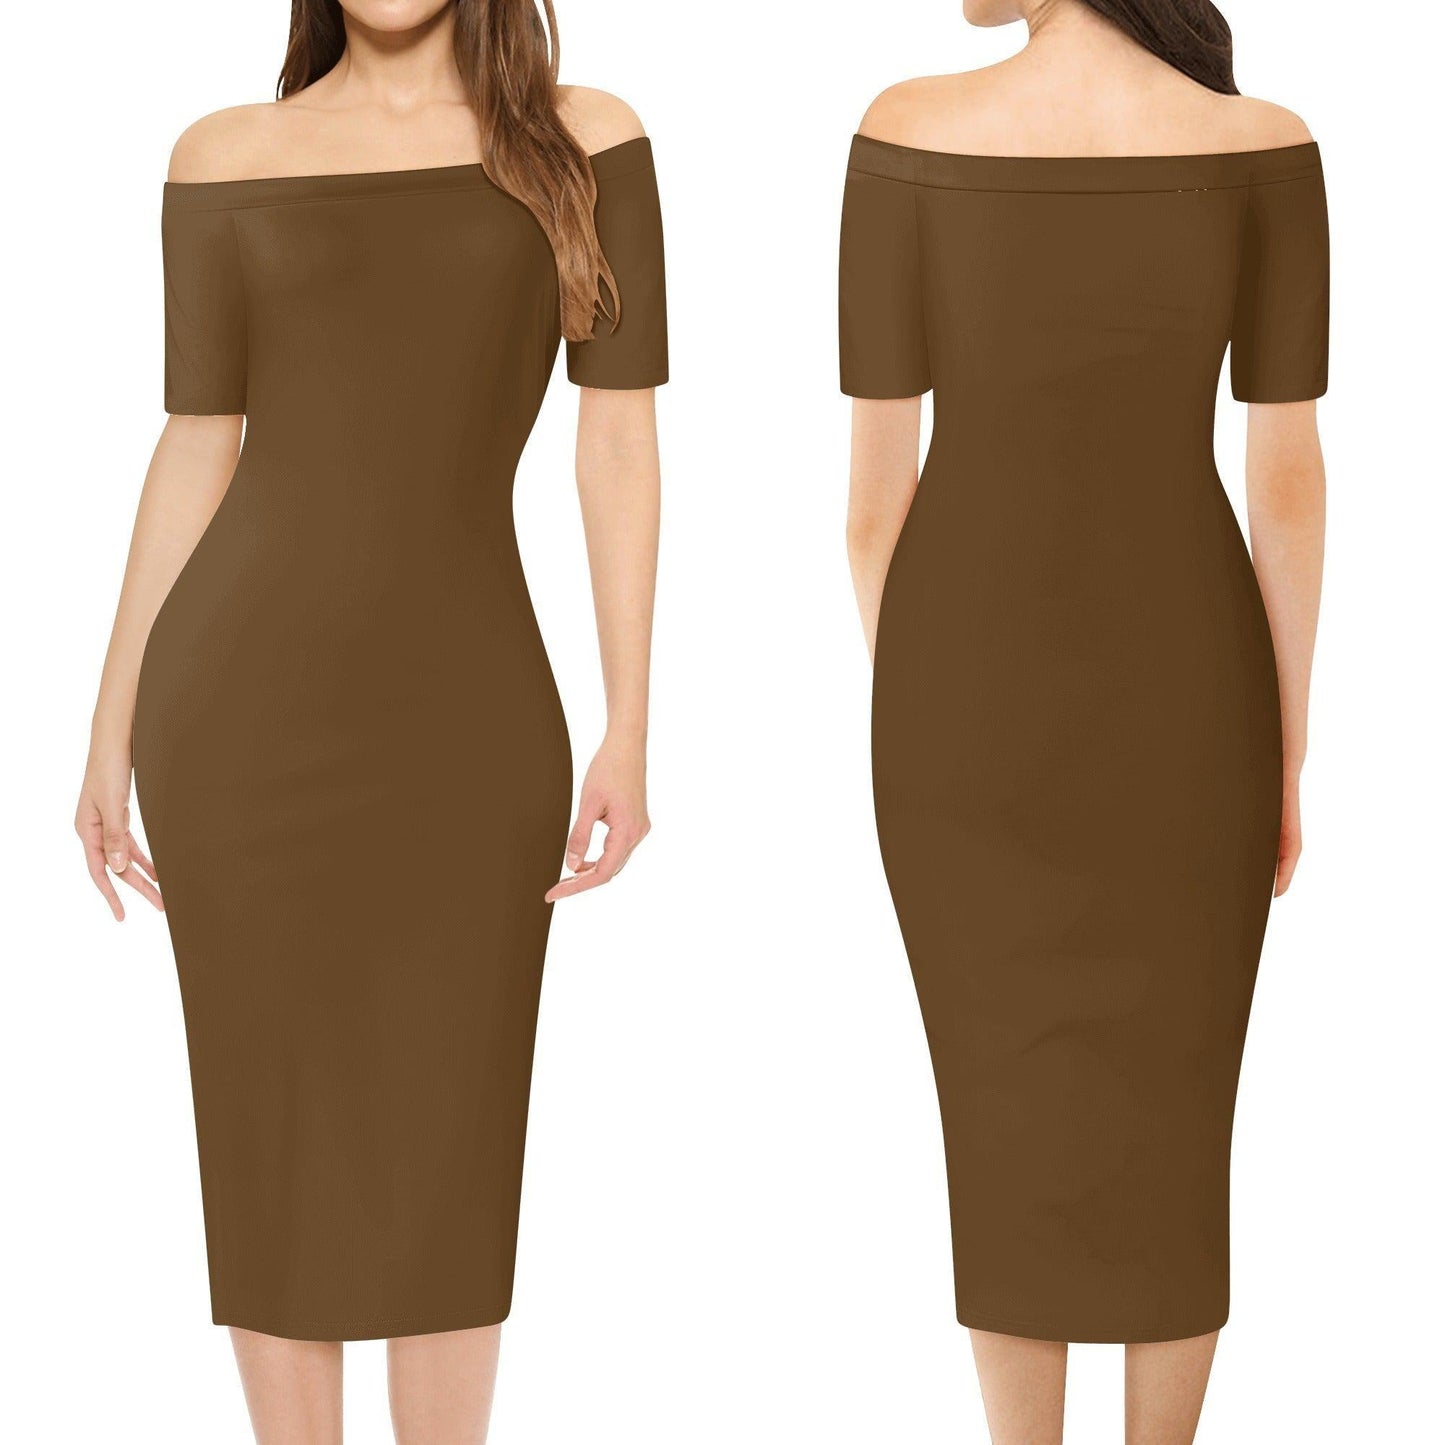 Braunes Off-Shoulder-Kleid -- Braunes Off-Shoulder-Kleid - undefined Off-Shoulder-Kleid | JLR Design